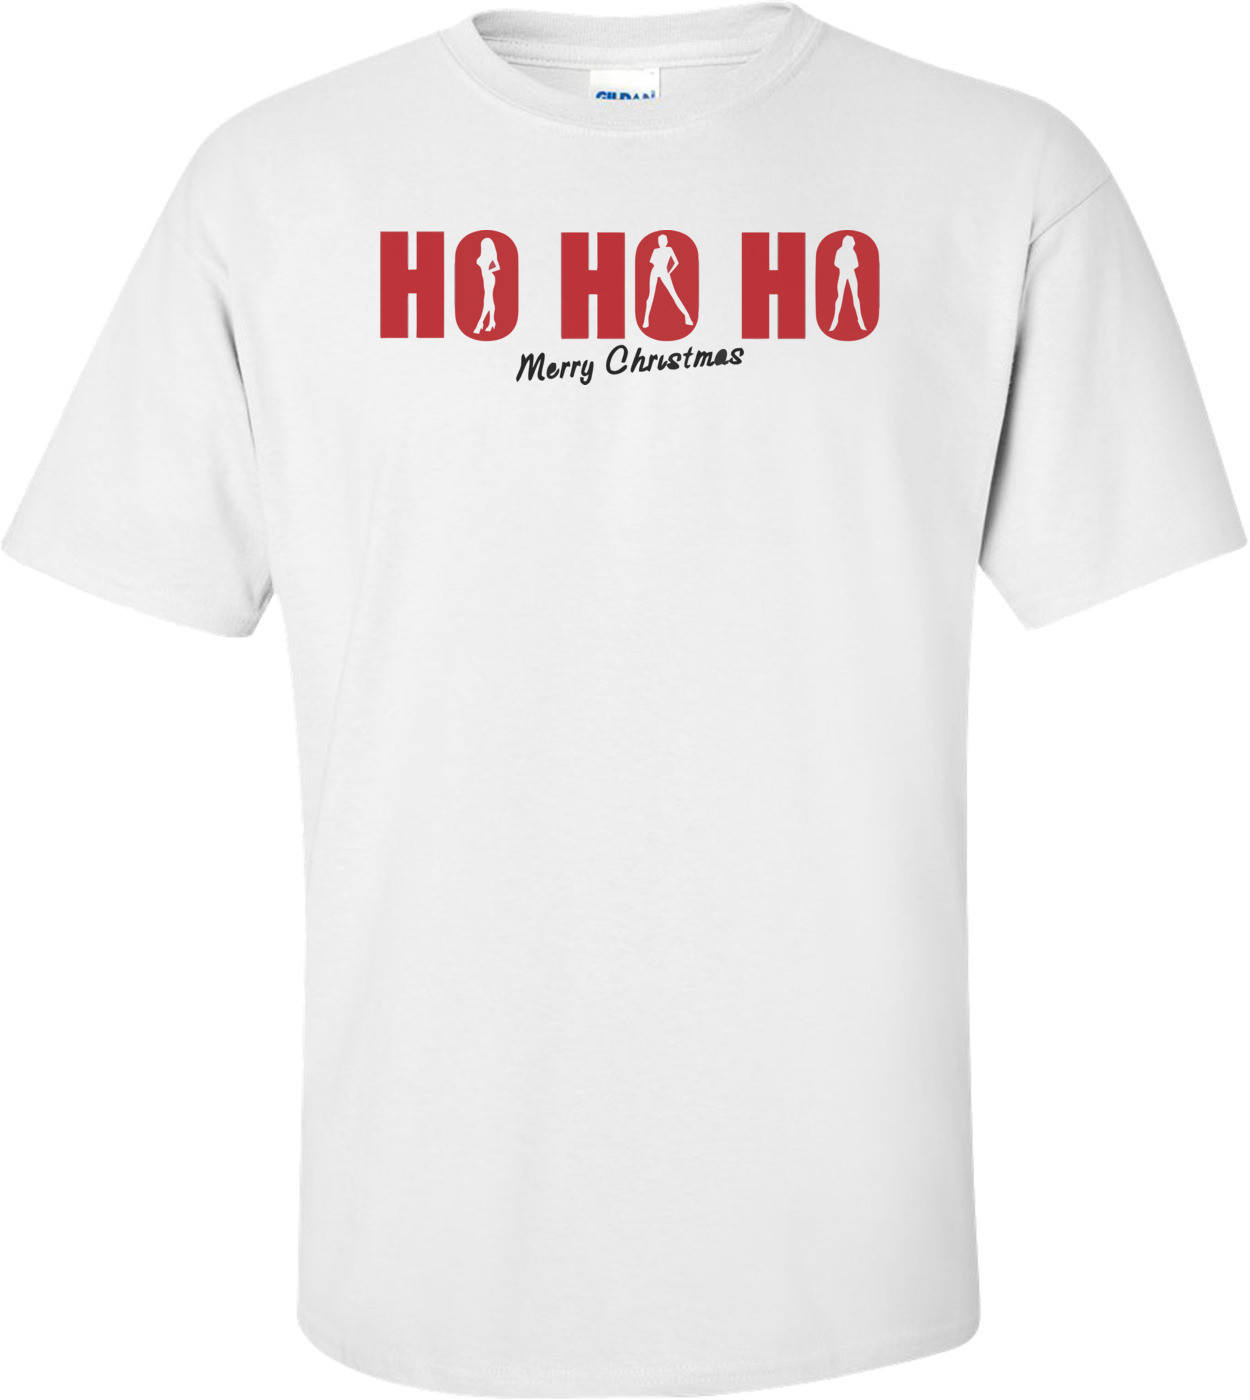 Ho Ho Ho! Merry Christmas